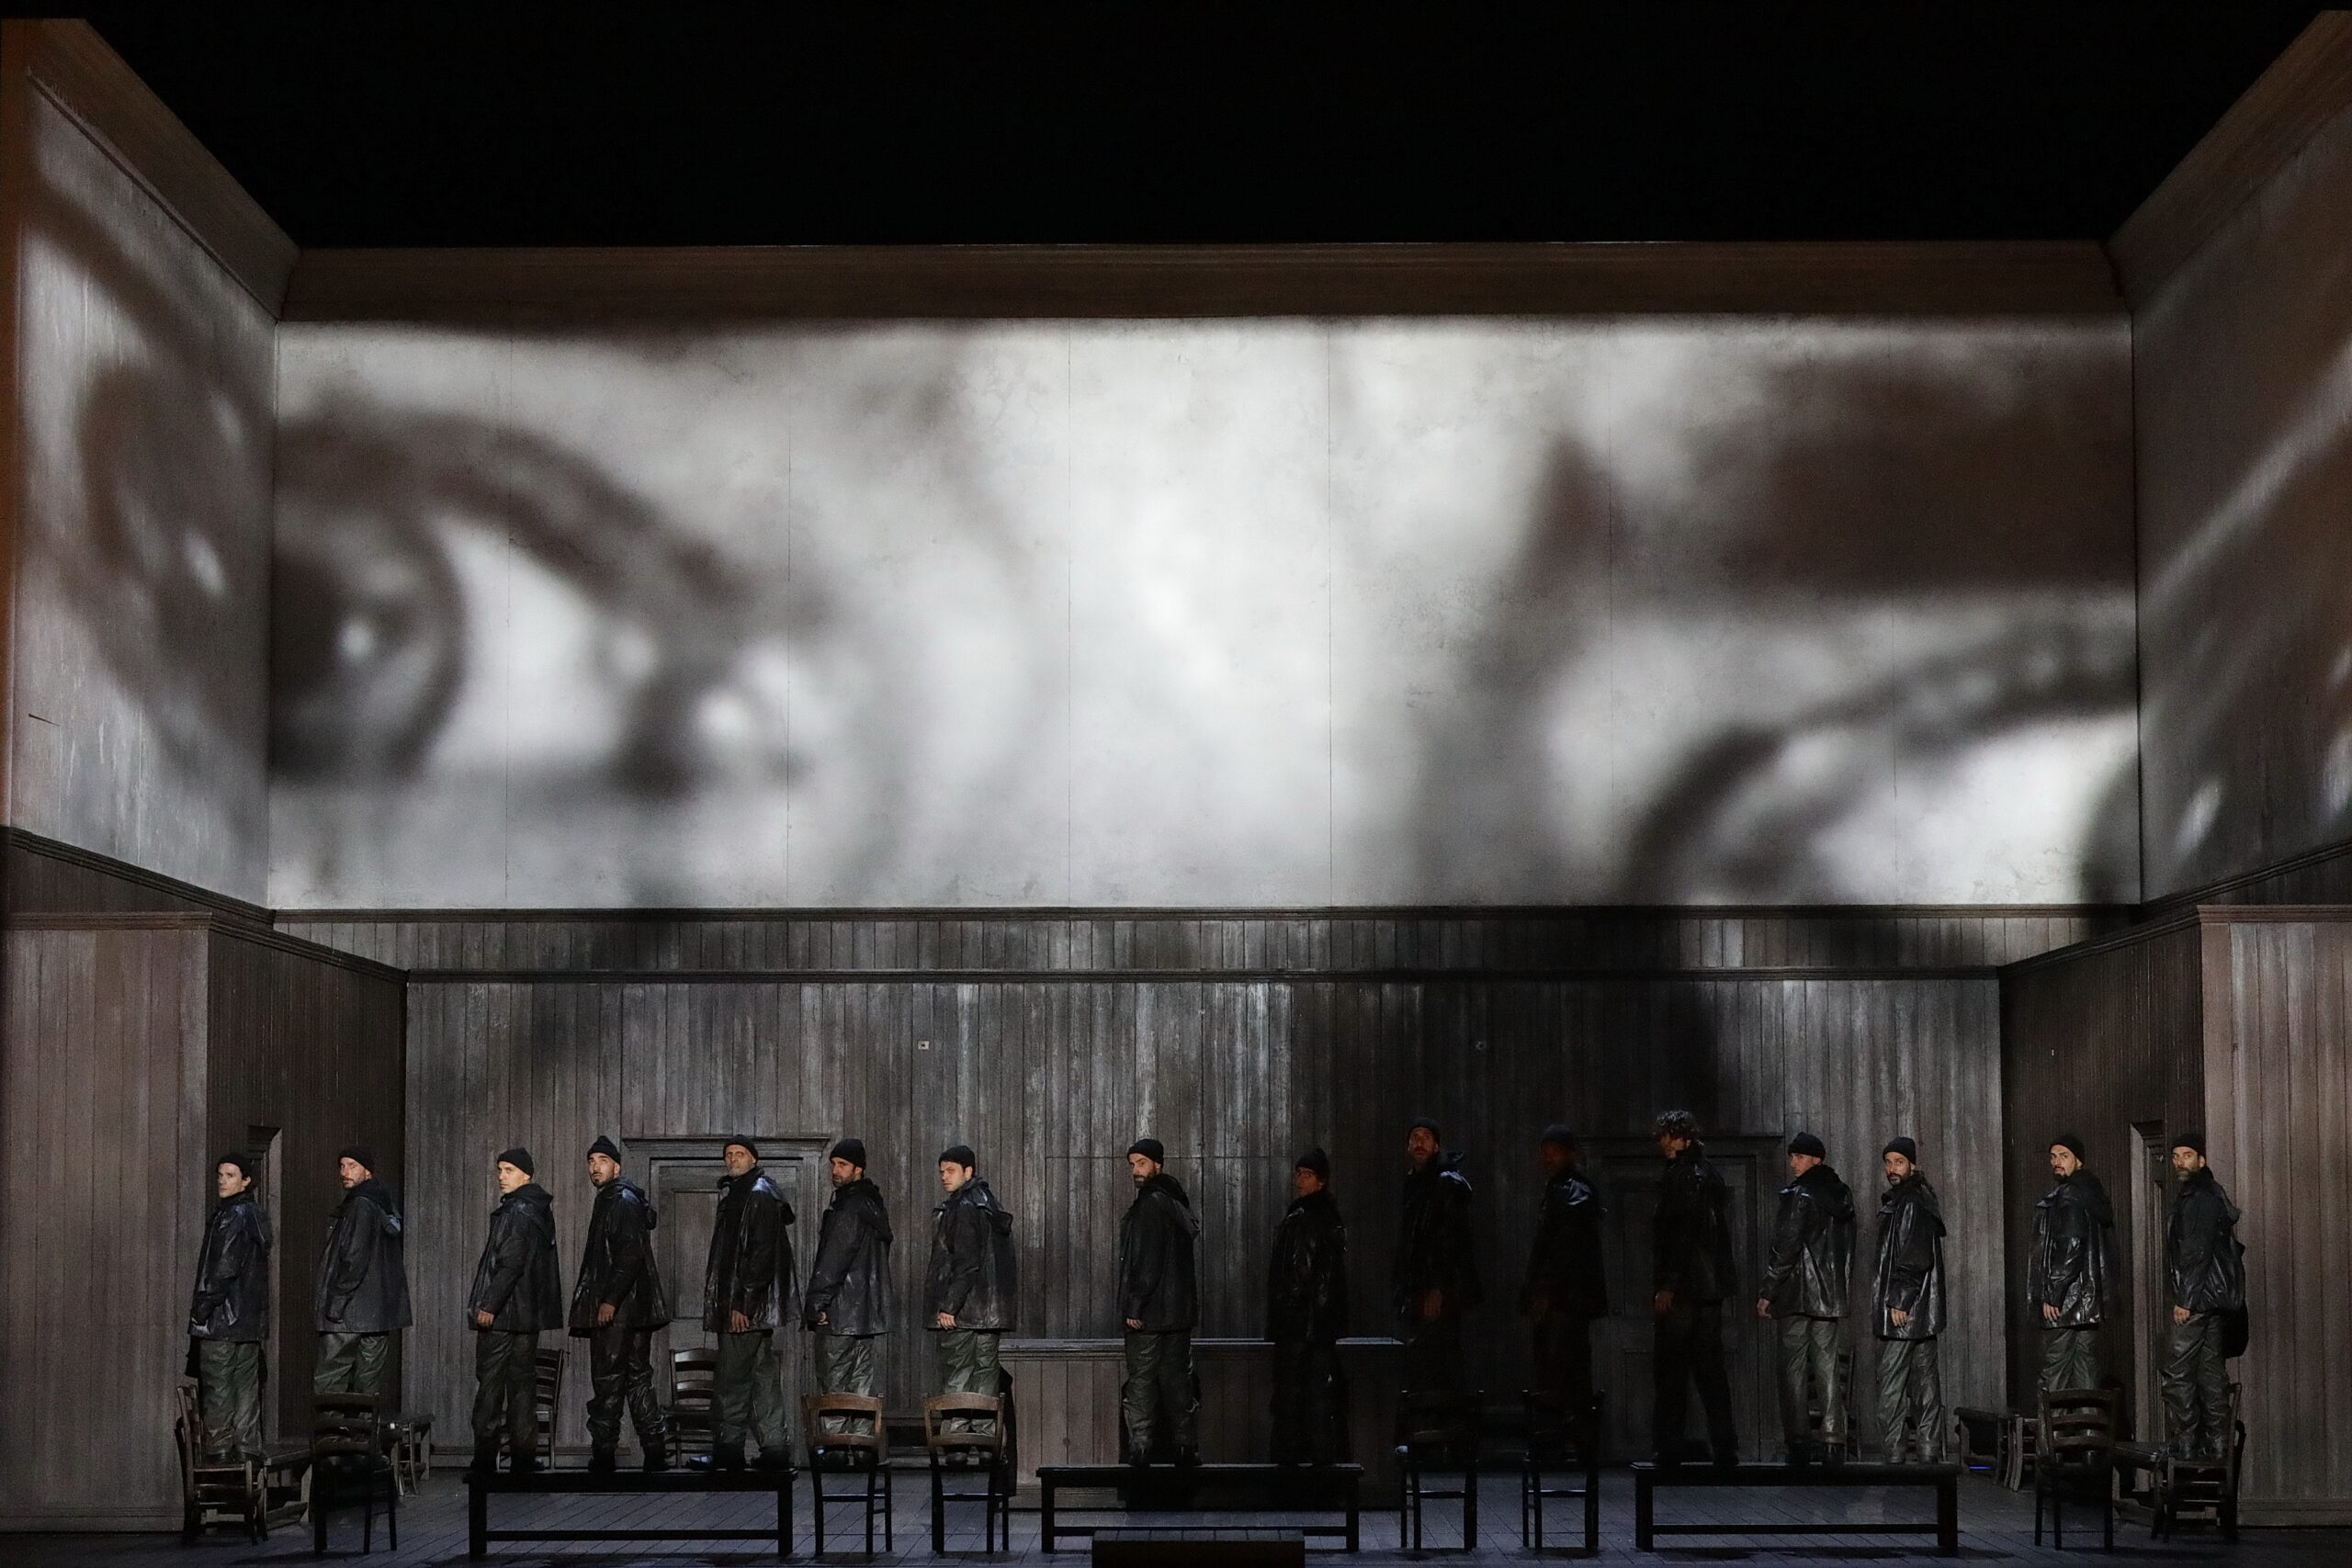 Una escena de "Peter Grimes" en La Scala / Foto: Brescia e Amisano